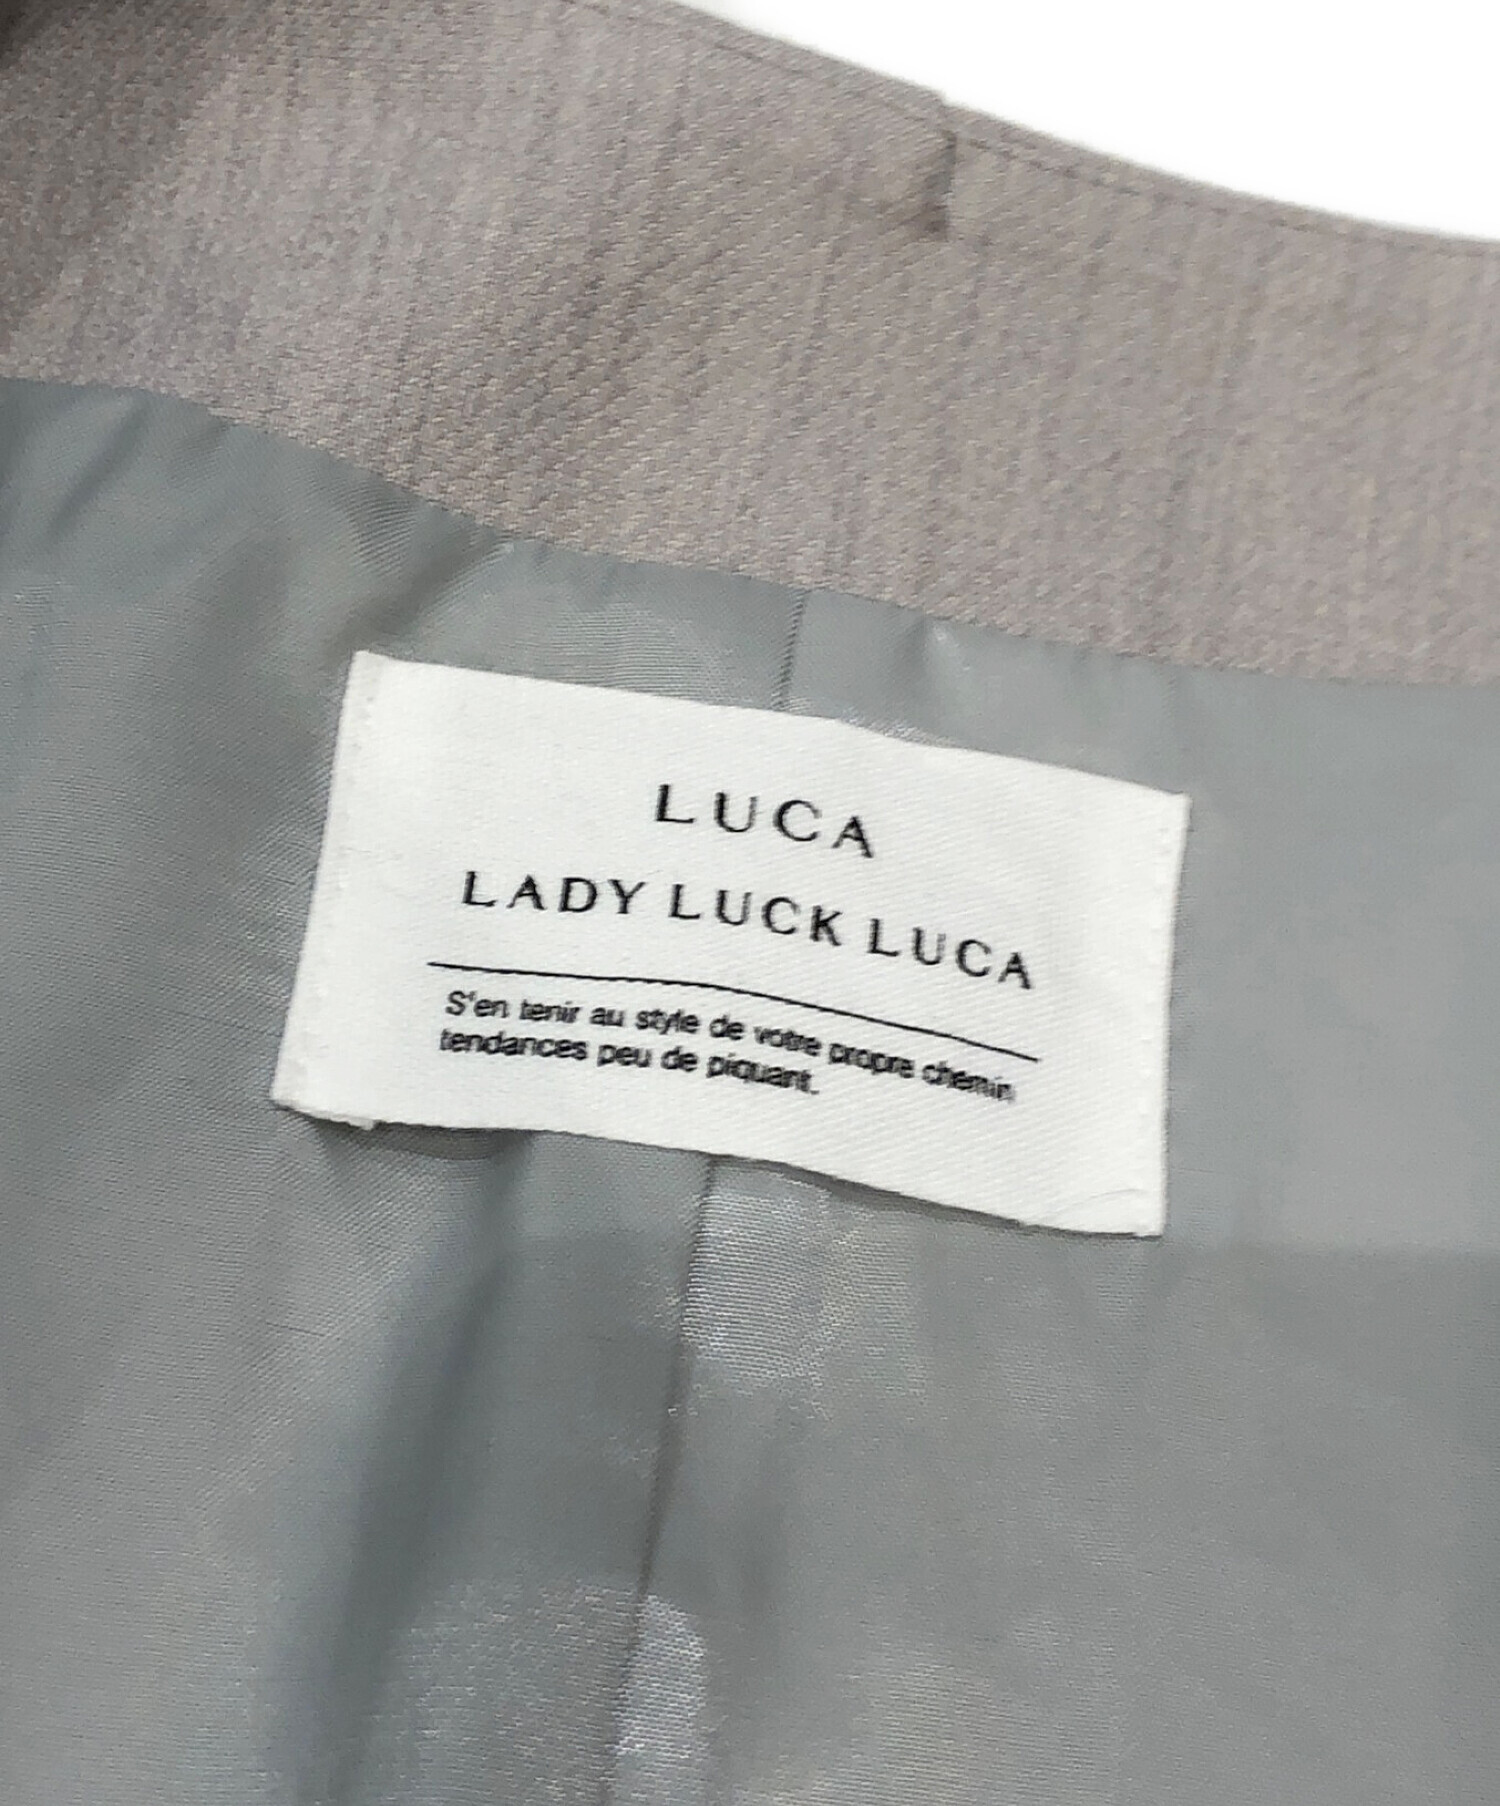 中古・古着通販】LUCA/LADY LUCK LUCA (レディラックルカ) アシメ